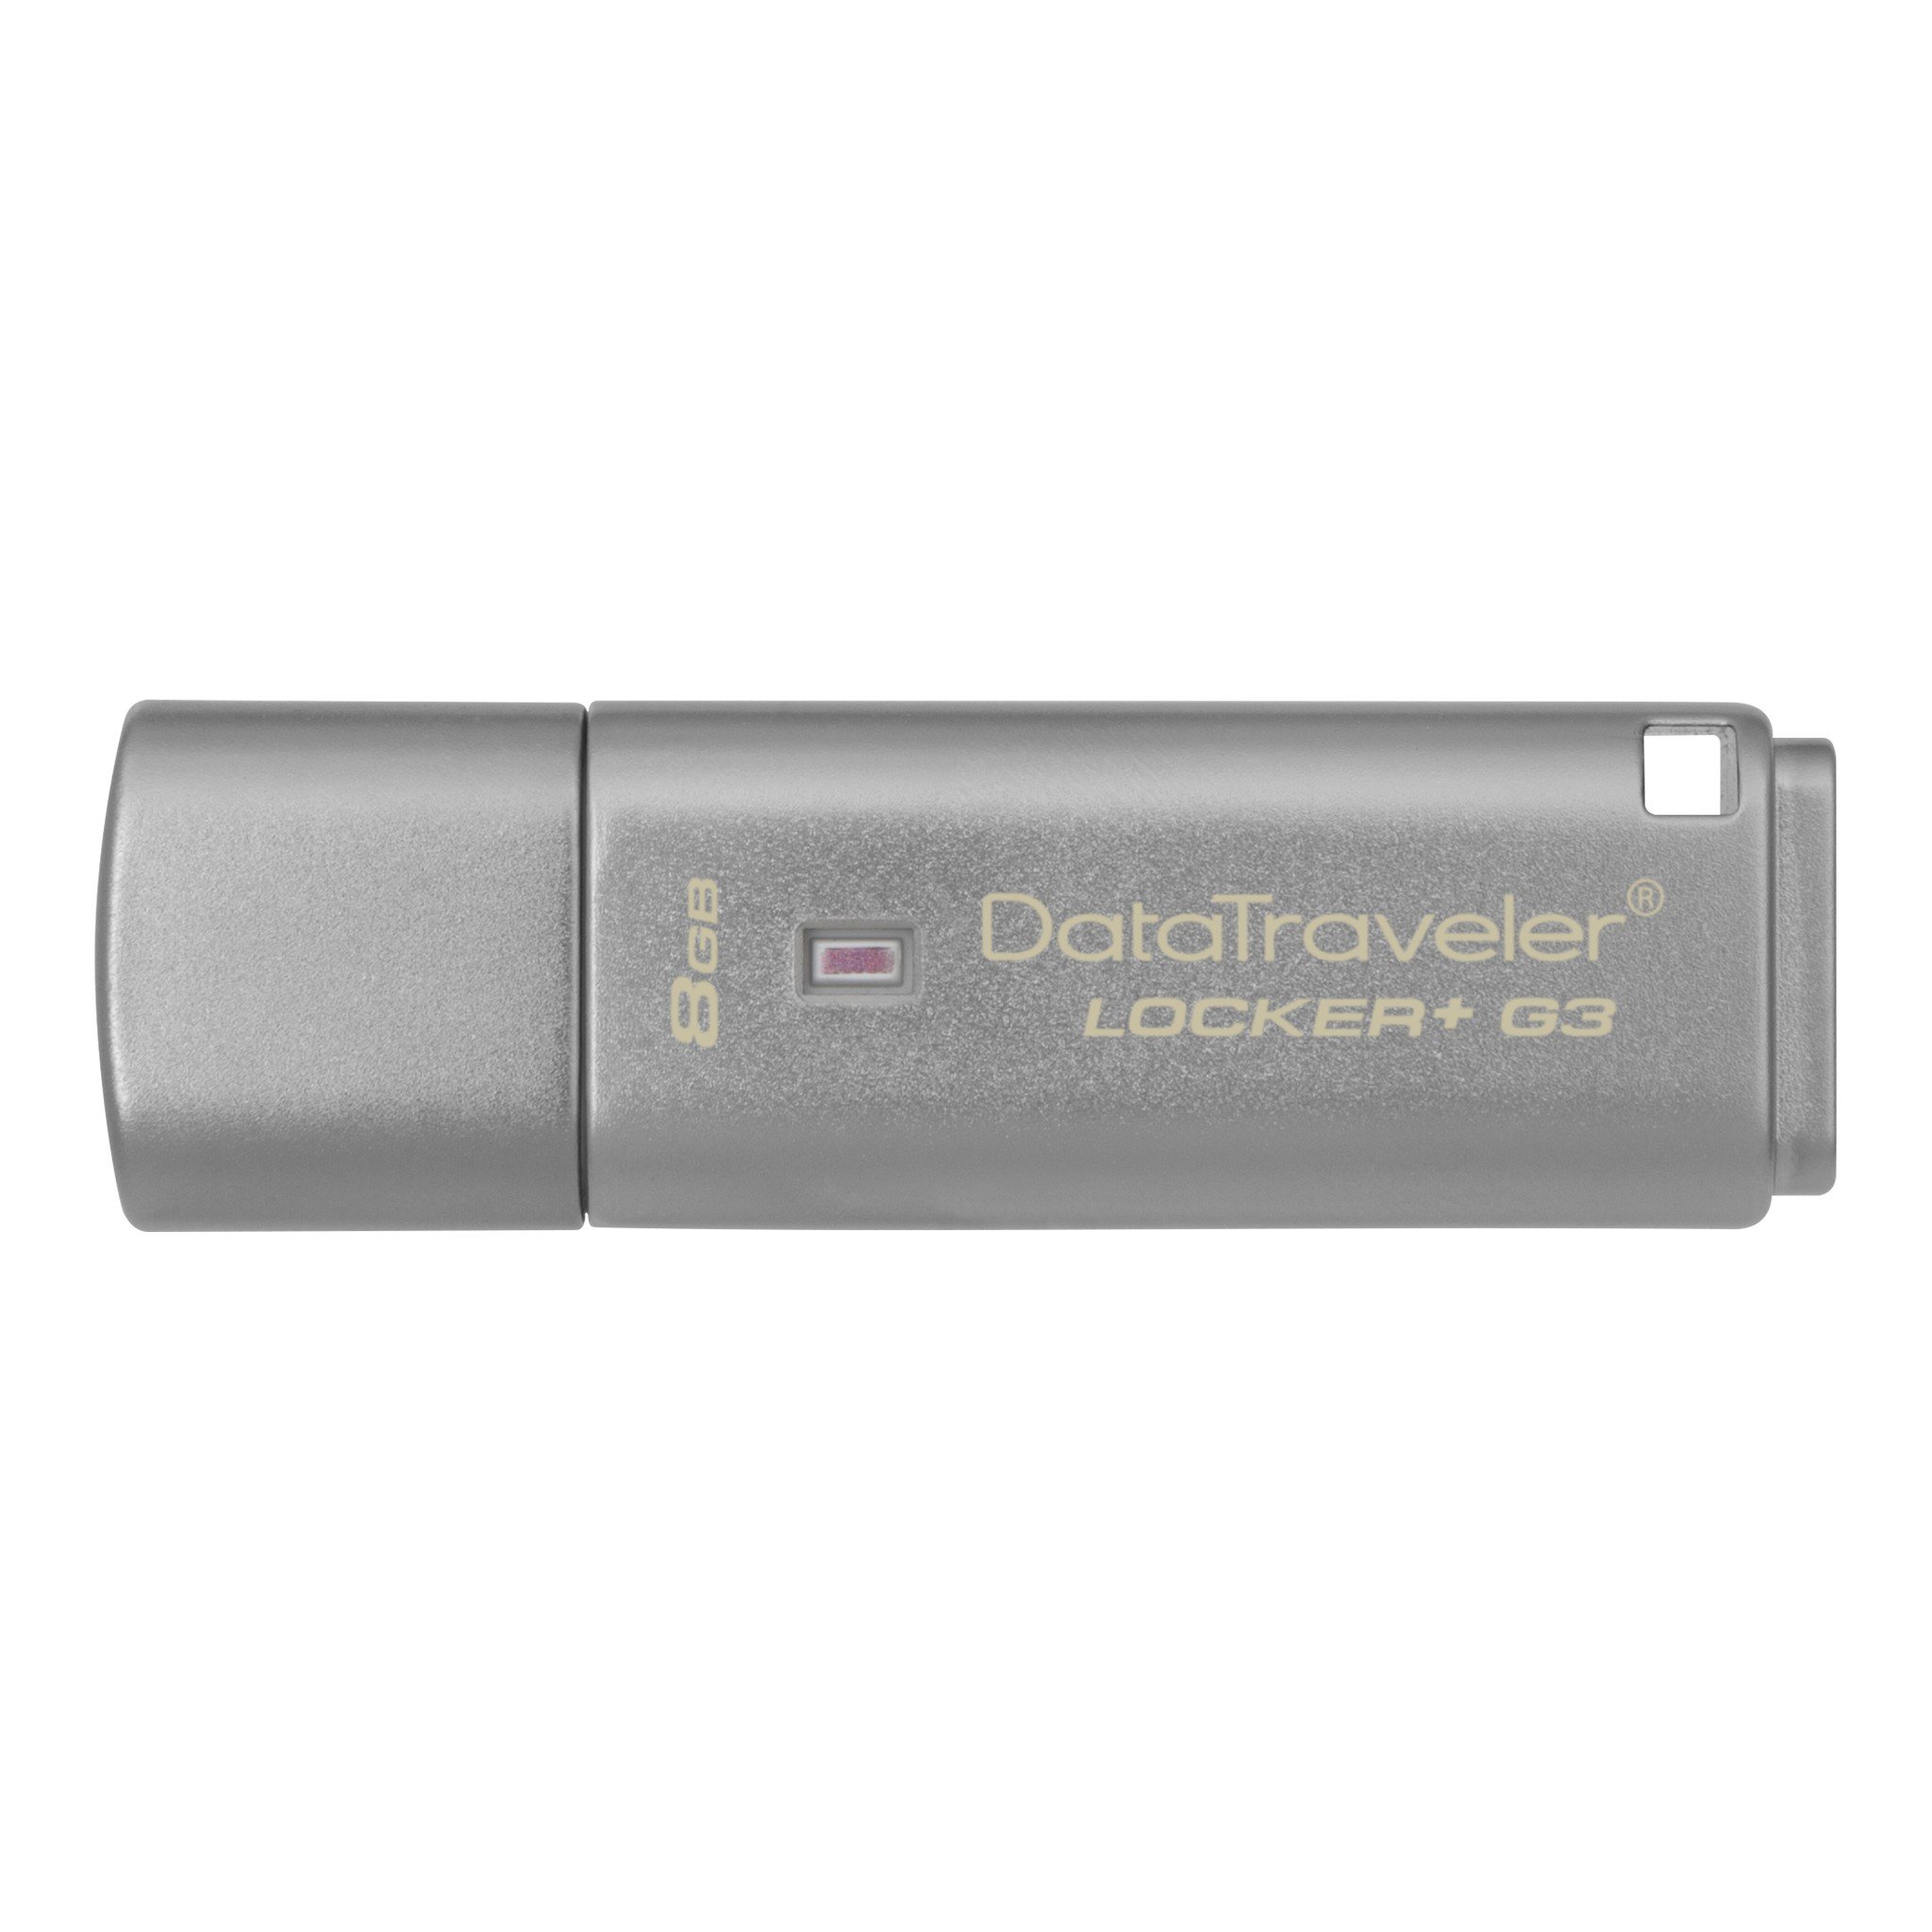 Pamięć Kingston 8GB DataTraveler Locker+ G3 USB 3.0 80MB/s DTLPG3/8GB szary widok od przodu na pendrive w poziomie